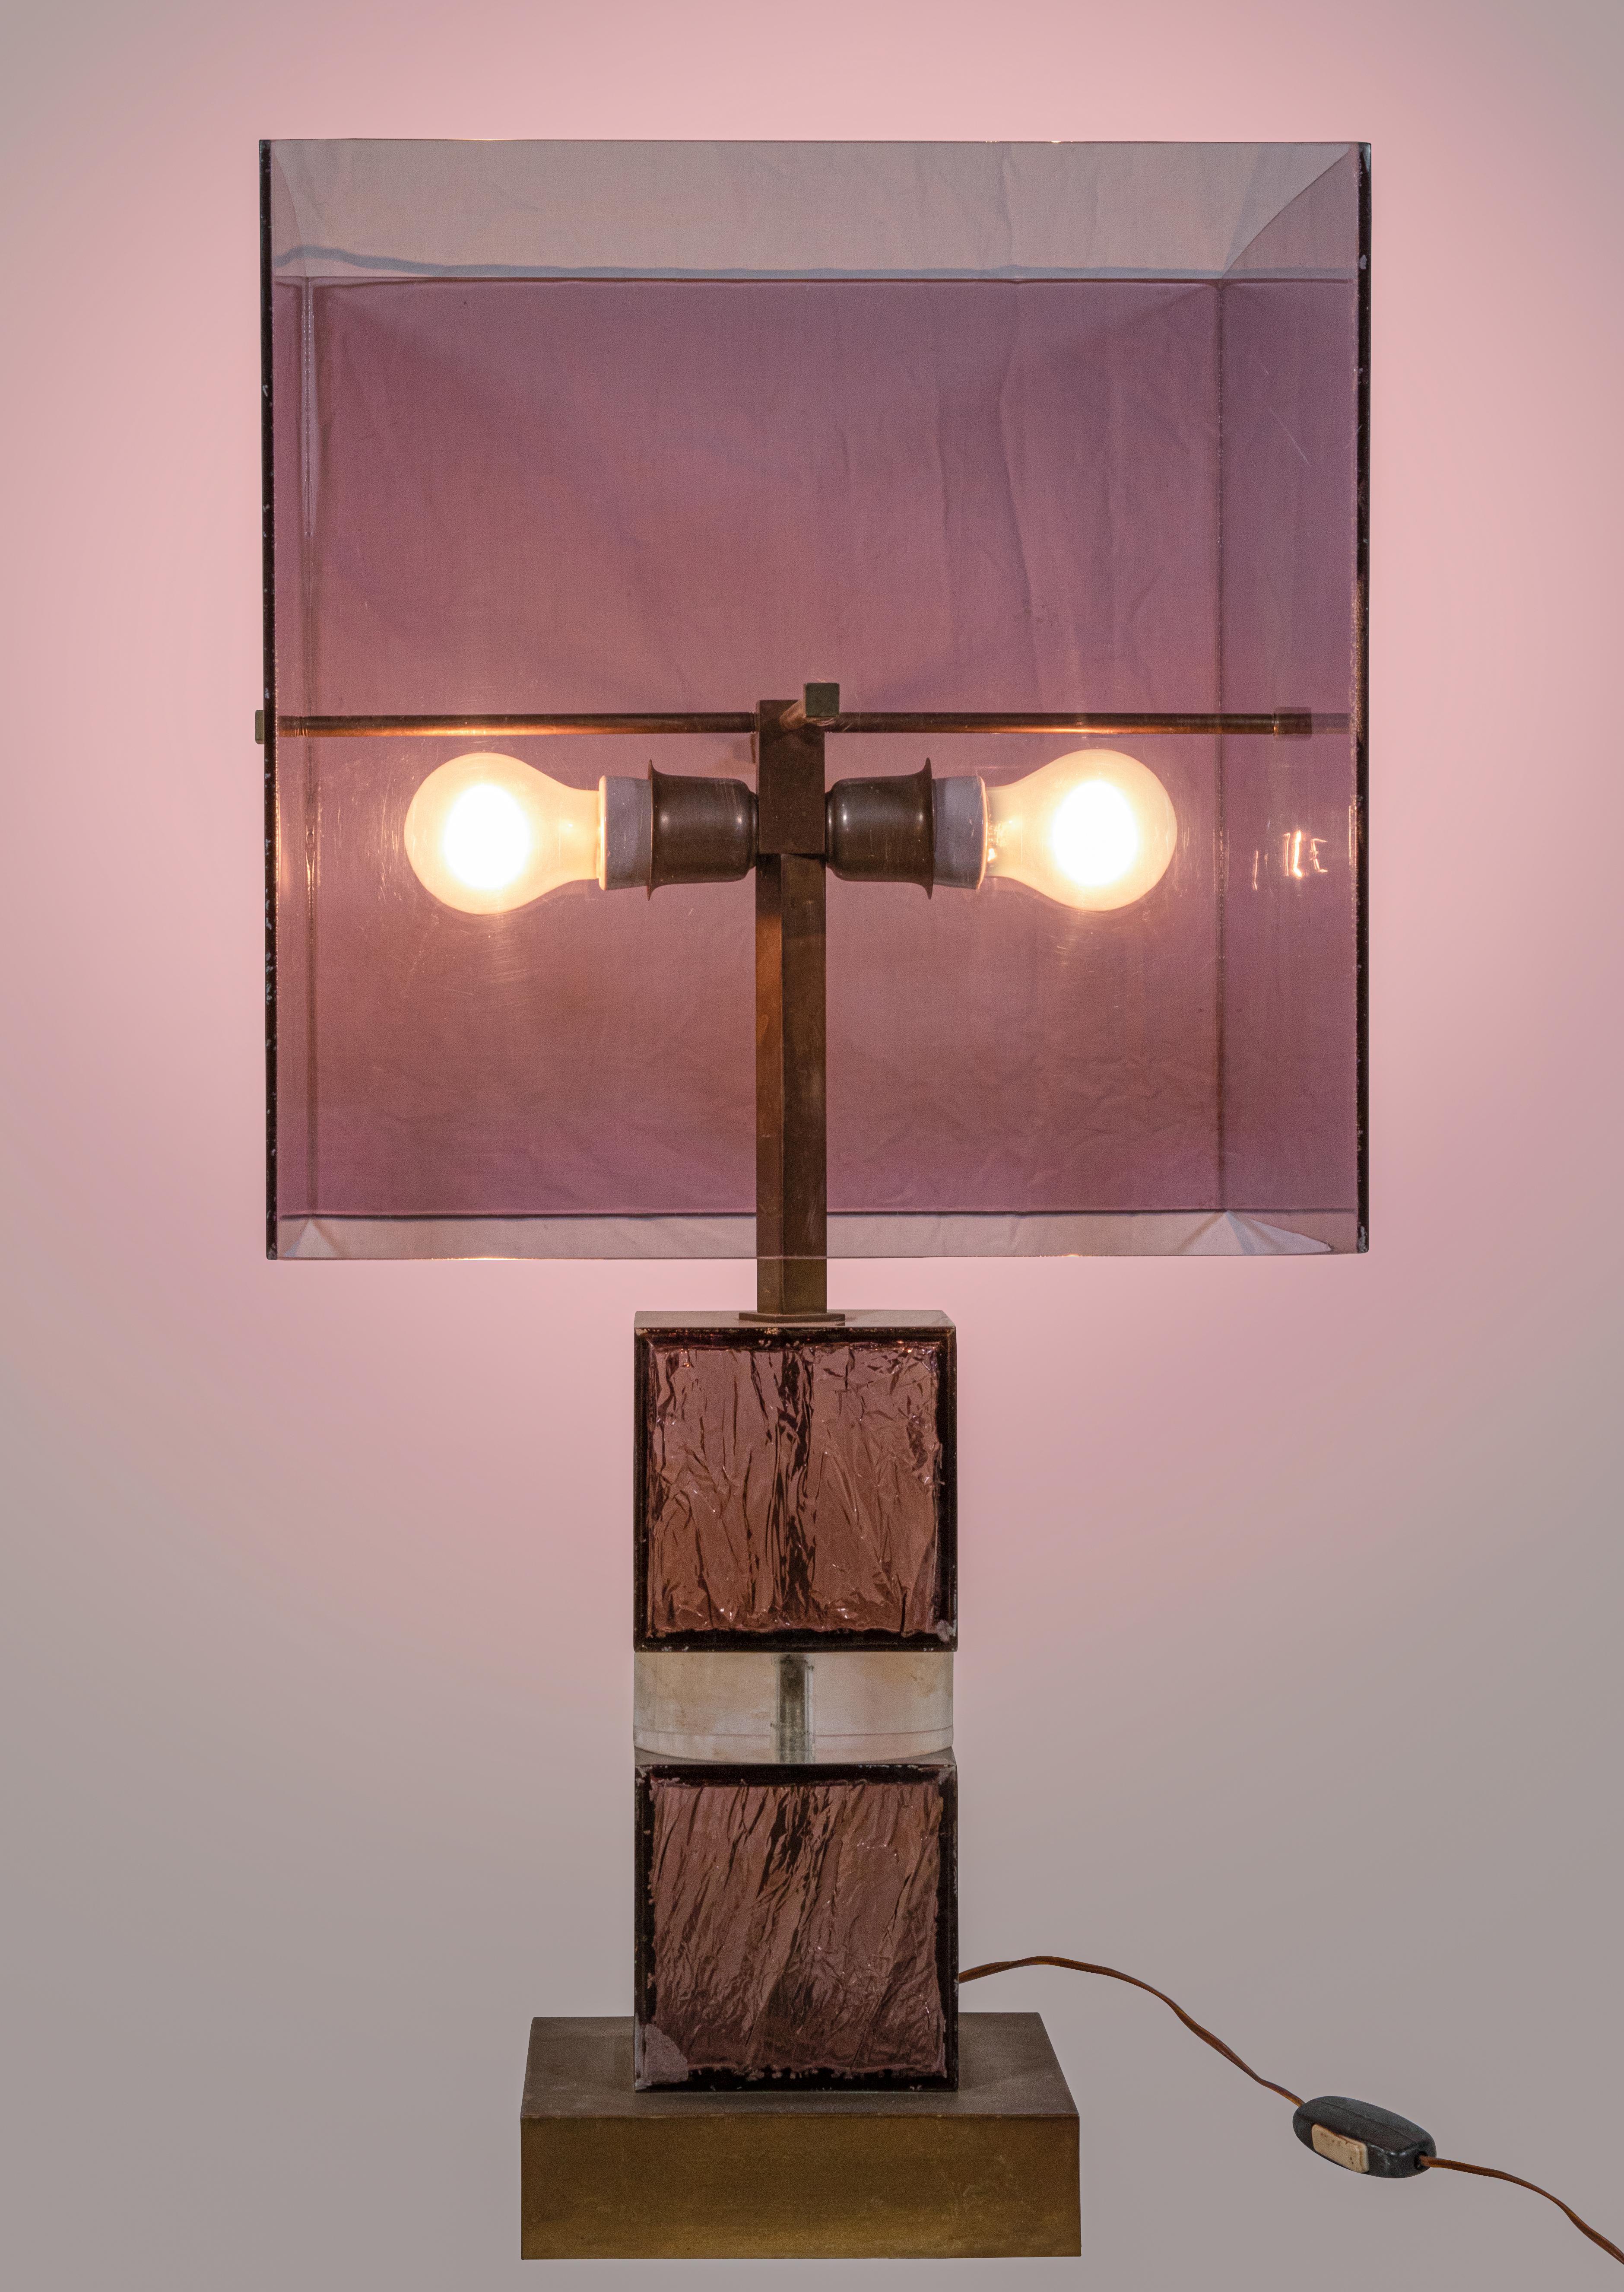 Vintage Lamp est une lampe au design original réalisée dans les années 1970 et attribuée à Romeo Rega.

Une lampe vintage unique réalisée en plexiglas, résine et By Vintage.

Dimensions de l'abat-jour 38x38x38 cm. Base 20x20x5 cm.

Collectional